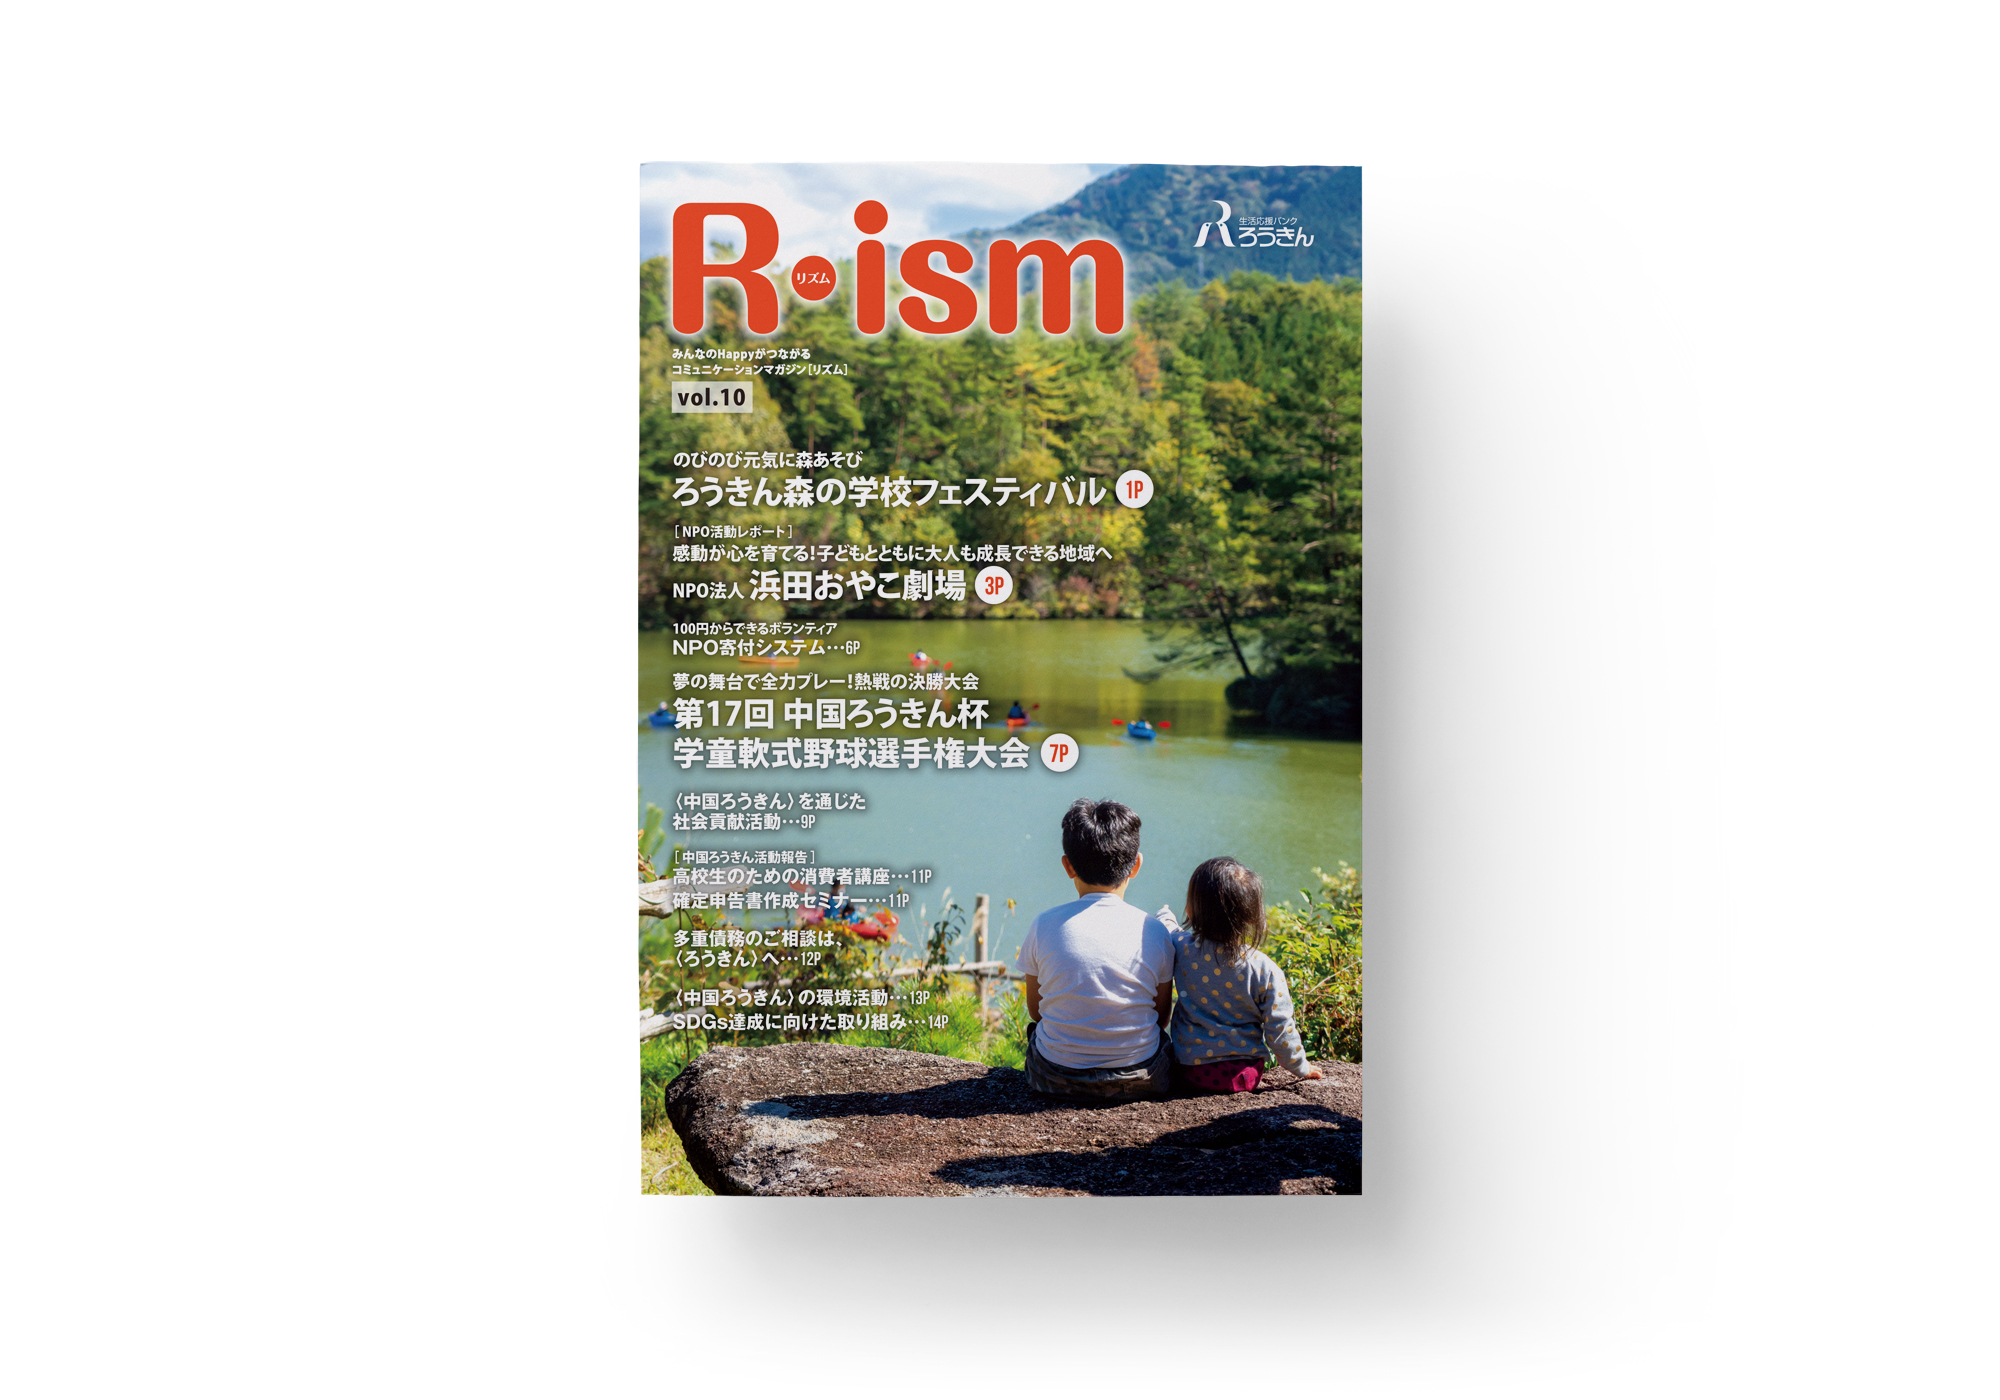 コミュニケーションマガジン「Rism」vol.10